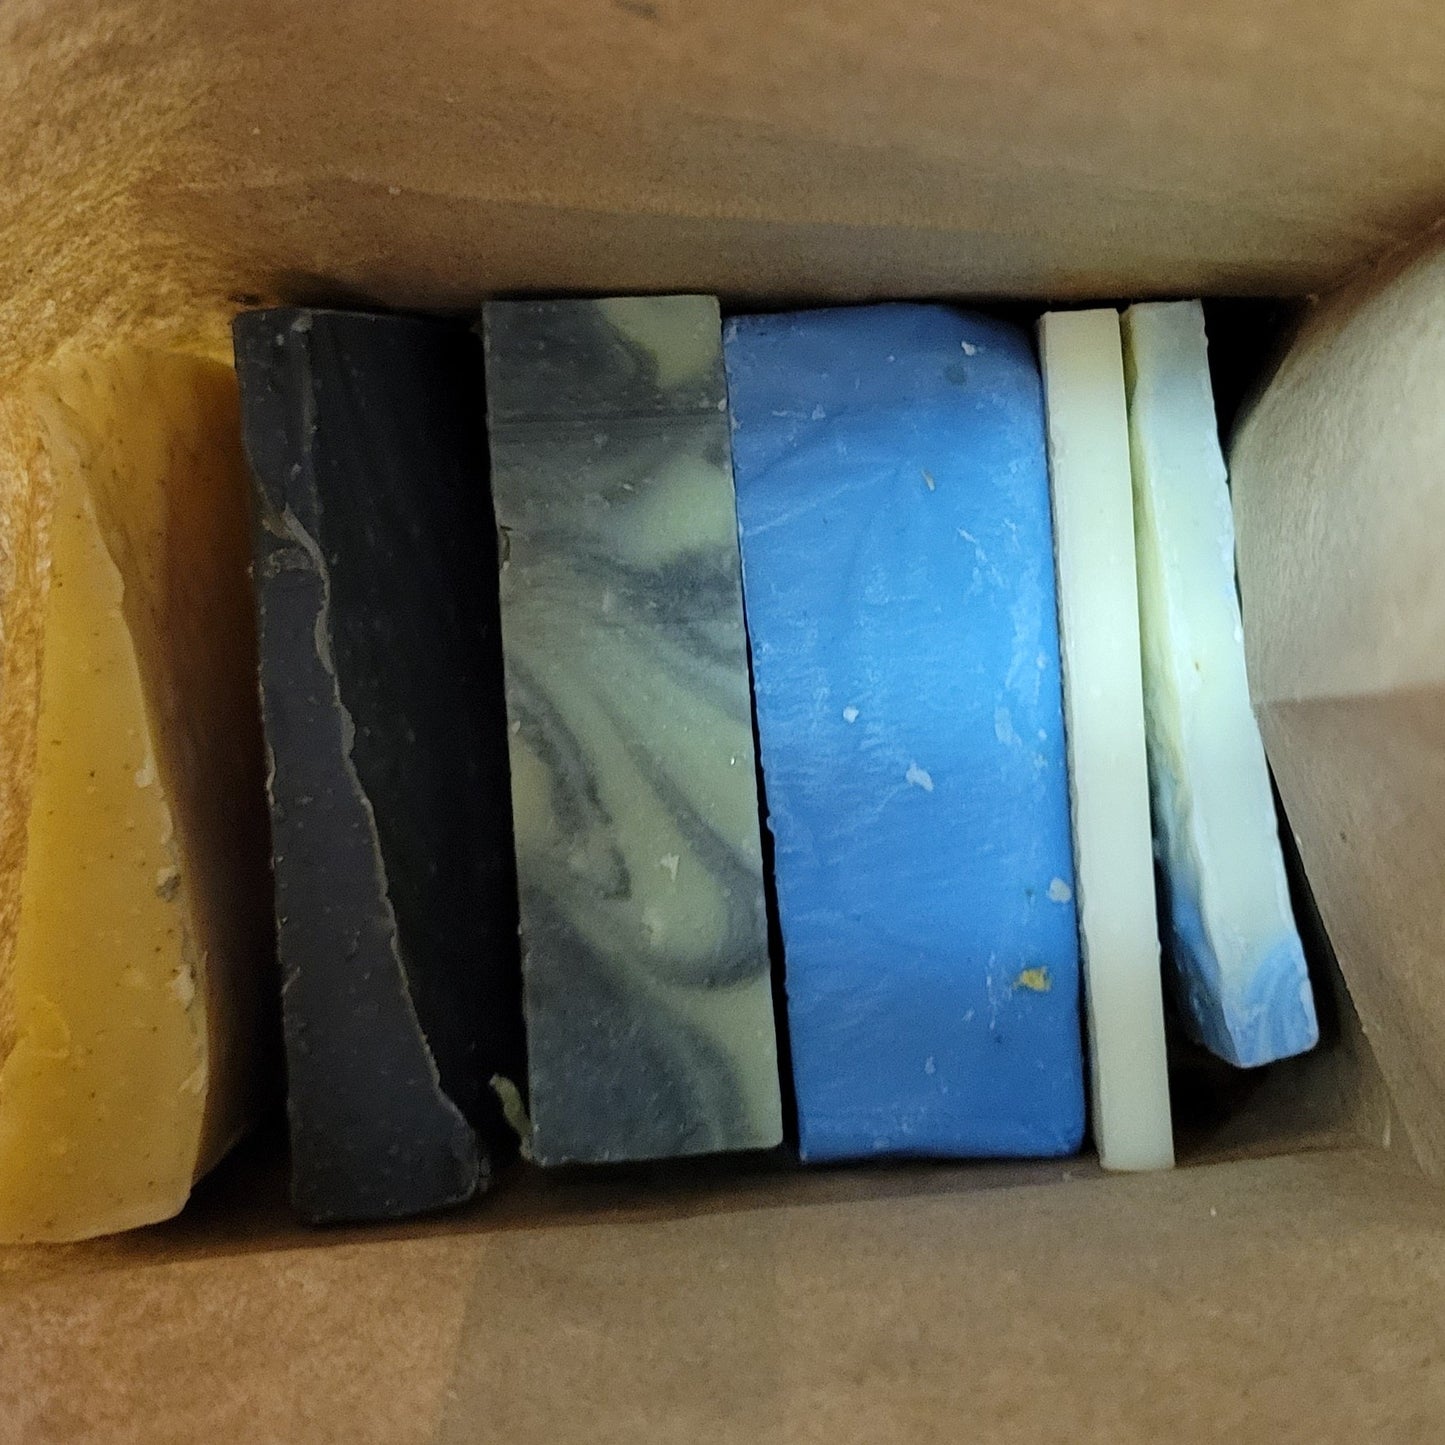 1 pound bulk soap scraps bag